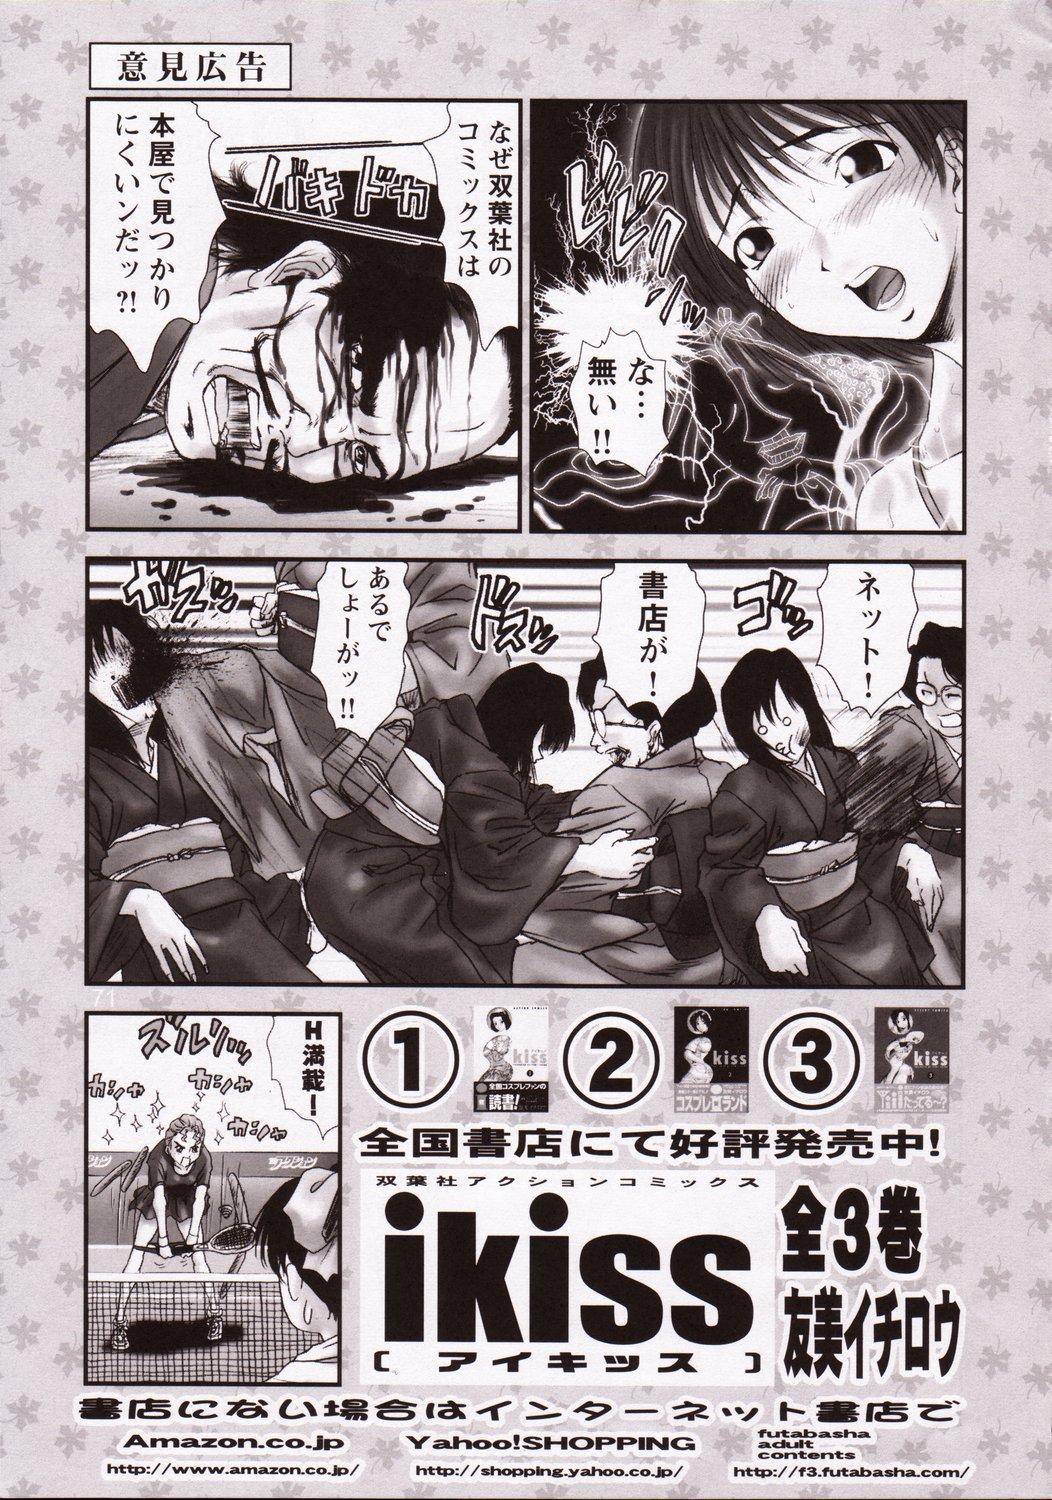 Kikan Tomomi Ichirou Dai 5 Gou 2003 Nen Haru Gou | Tomomi Ichirou Quarterly 2003 Spring Issue 71